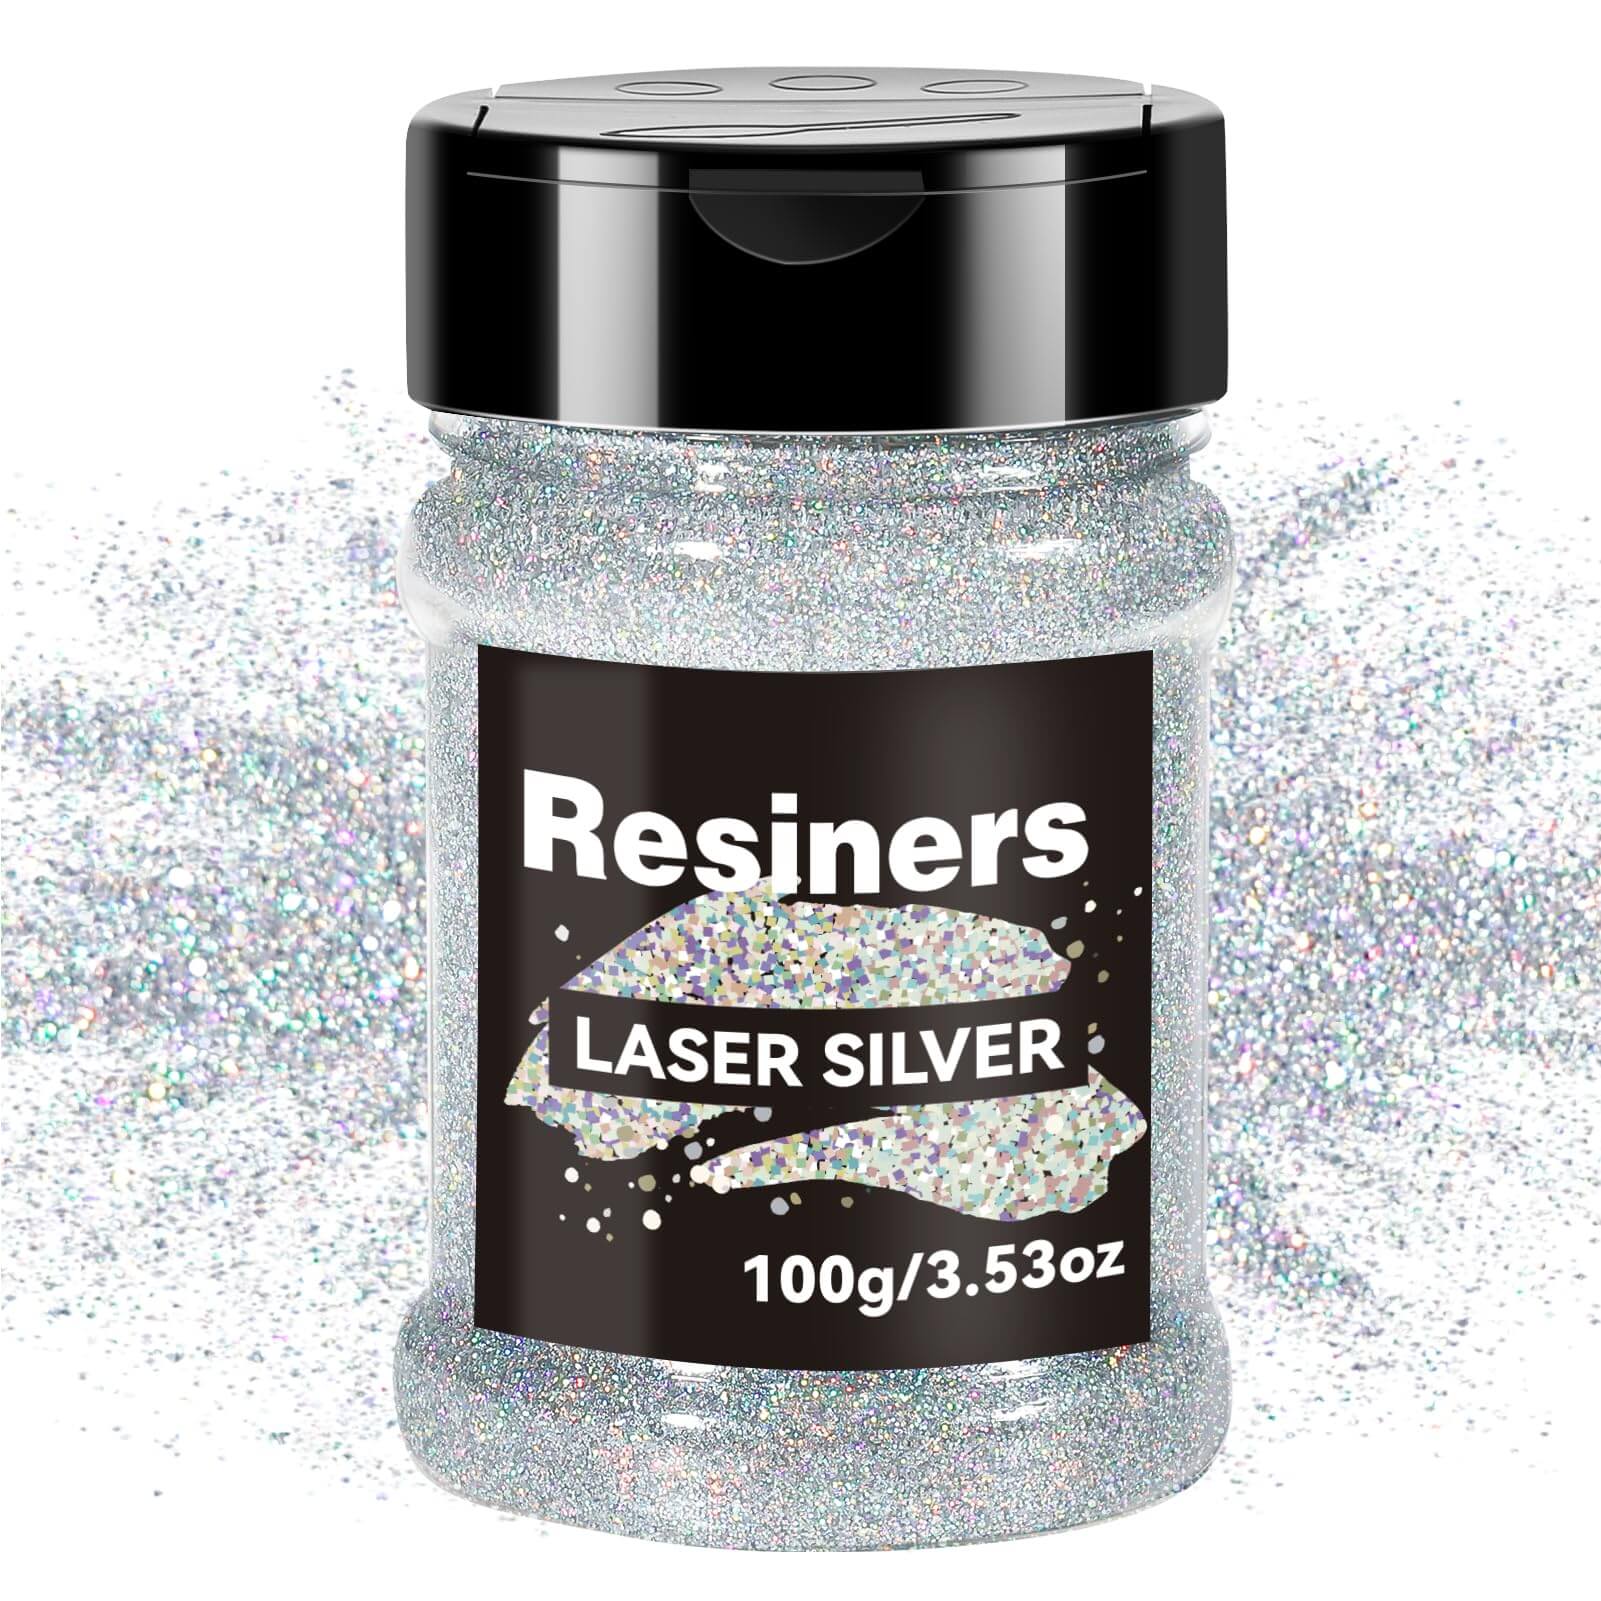 Ultra Fine Glitter Powder (Silver Ash Grey) 15g